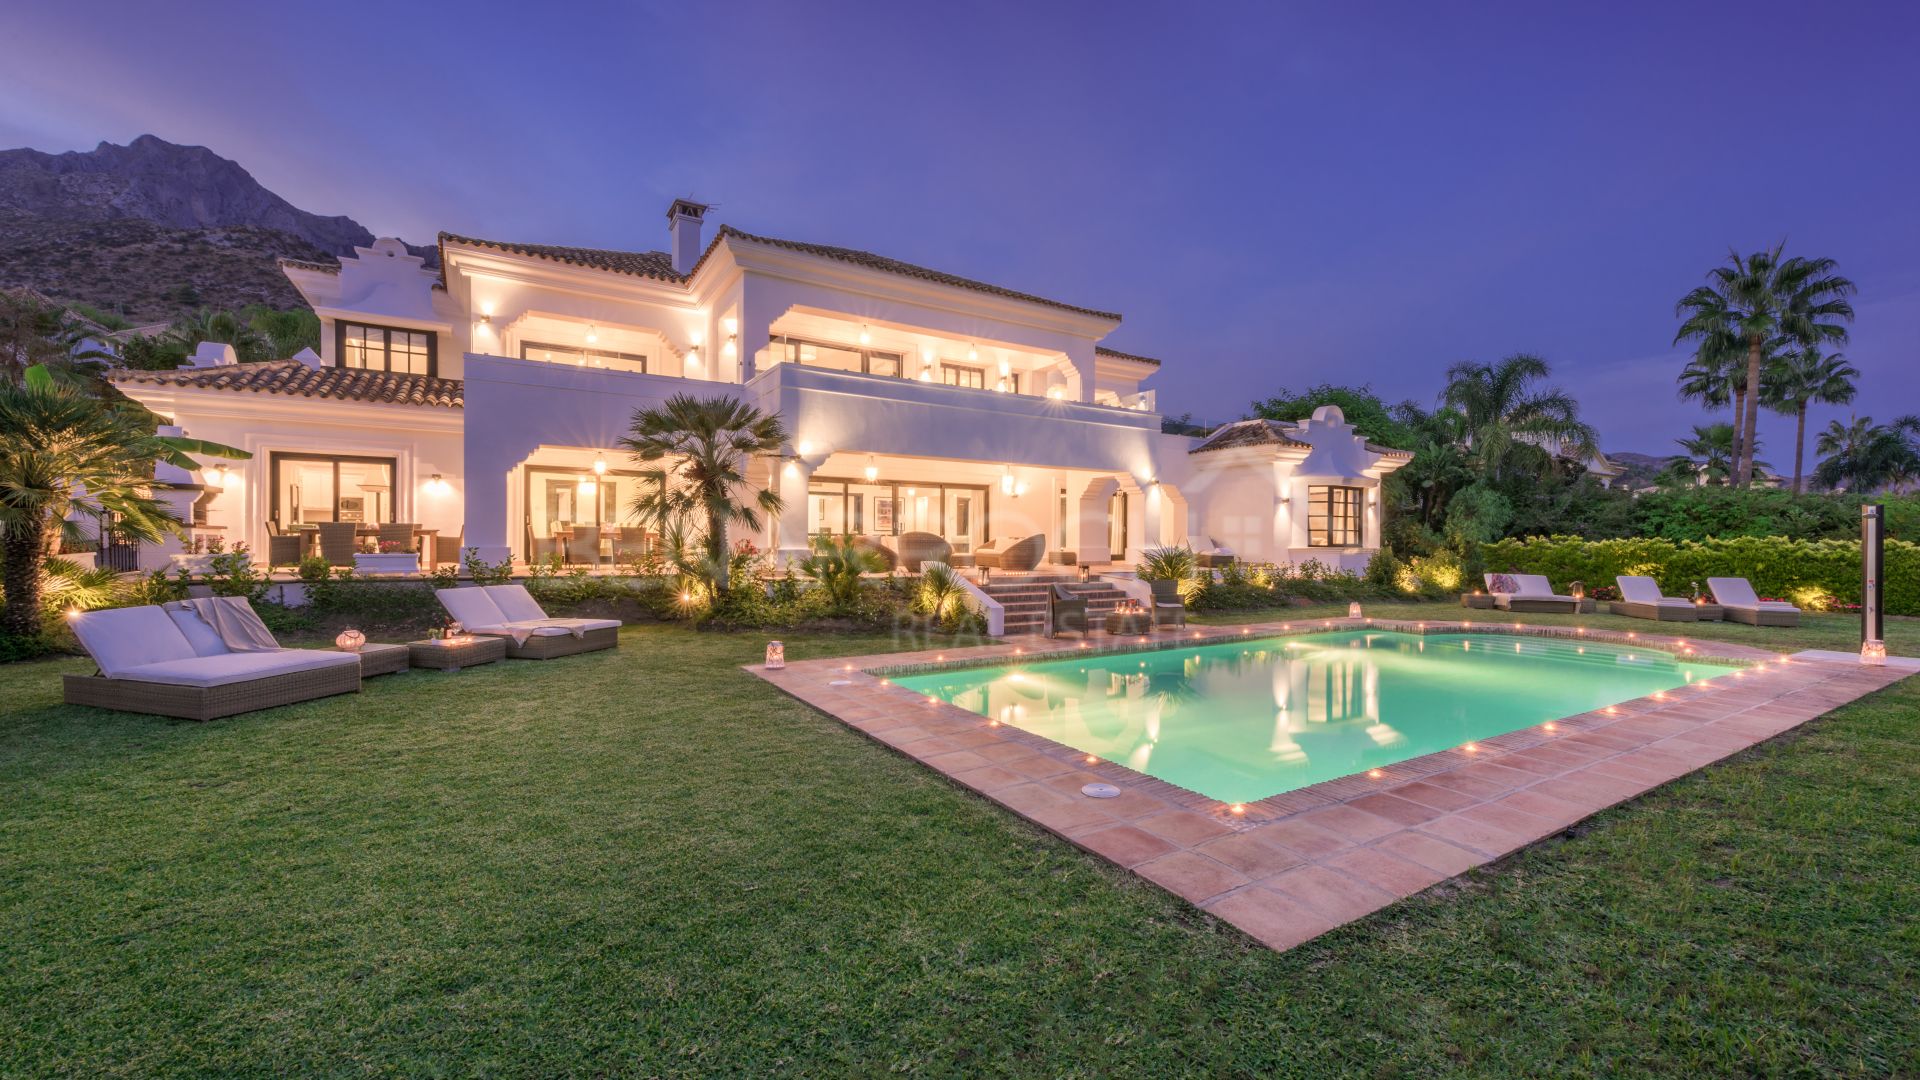 House for sale in Marbella, Costa del Sol